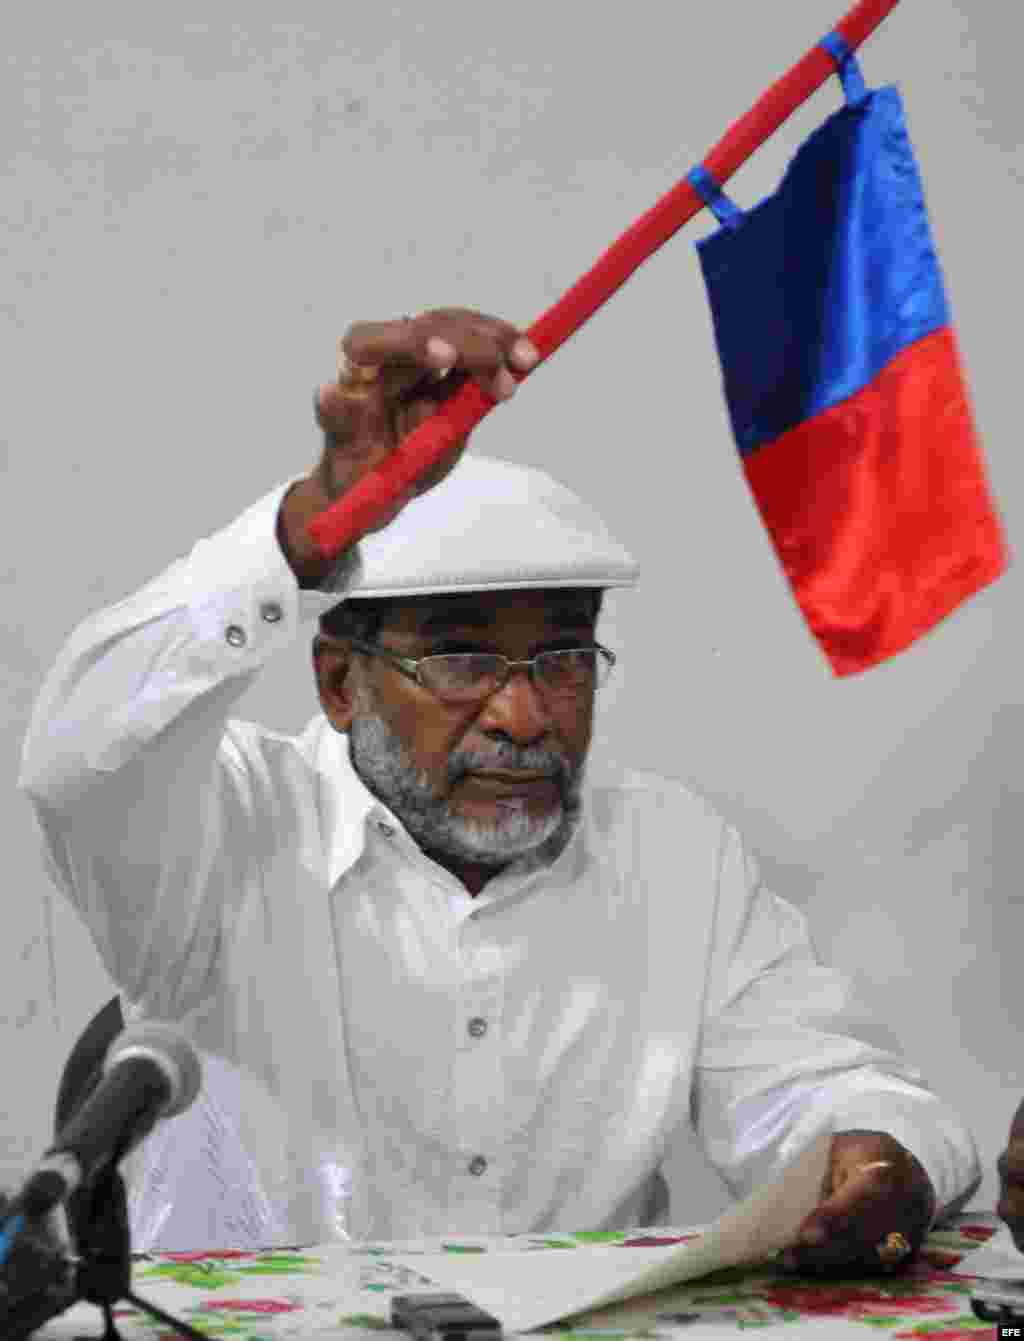 El sacerdote de Ifá o "babalawo" cubano Lázaro Cuesta muestra la bandera del signo regente del año 2014.